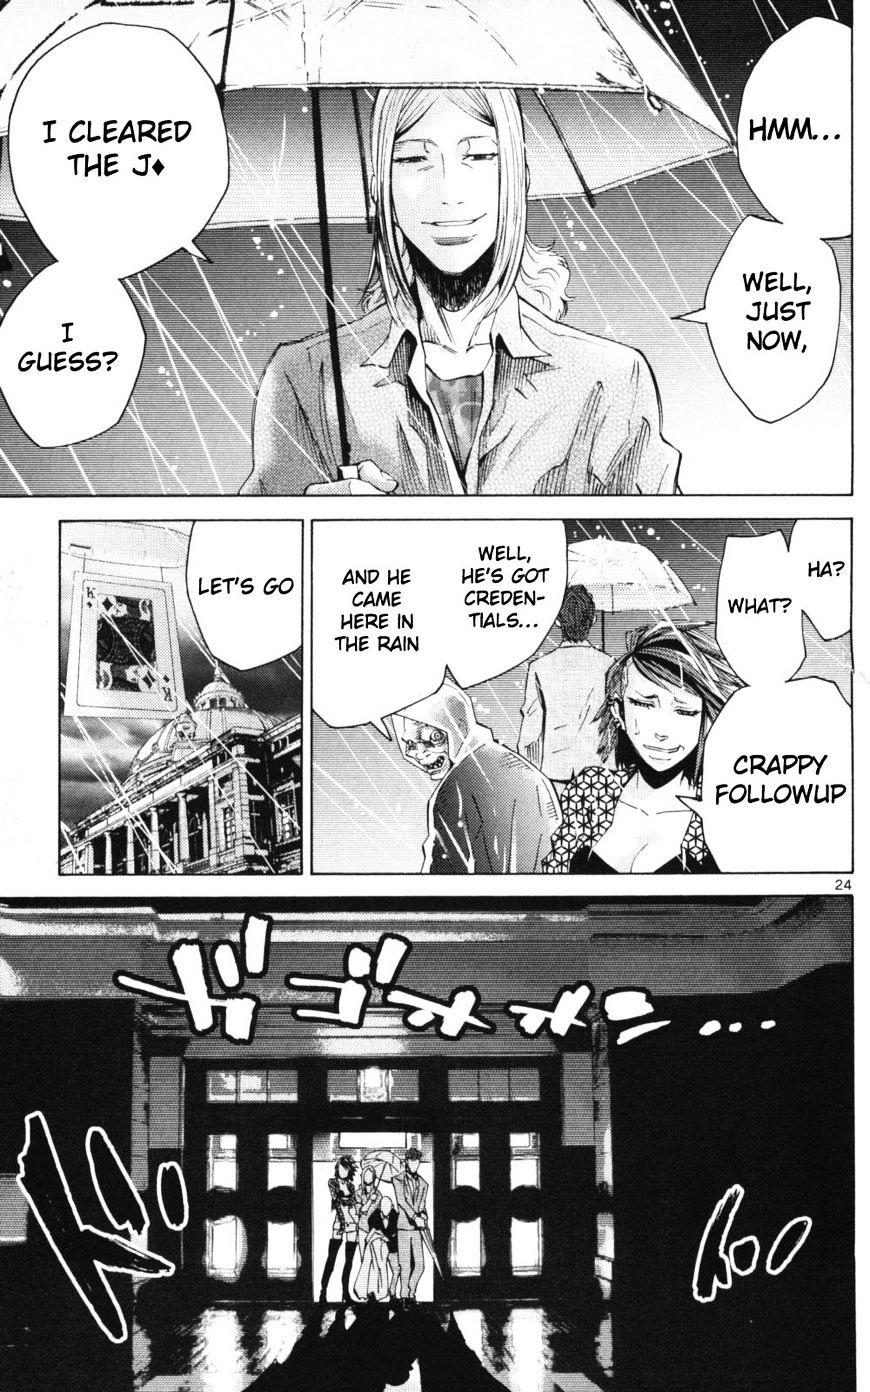 Imawa No Kuni No Alice Chapter 51.1 : Side Story 6 - King Of Diamonds (1) page 24 - Mangakakalot